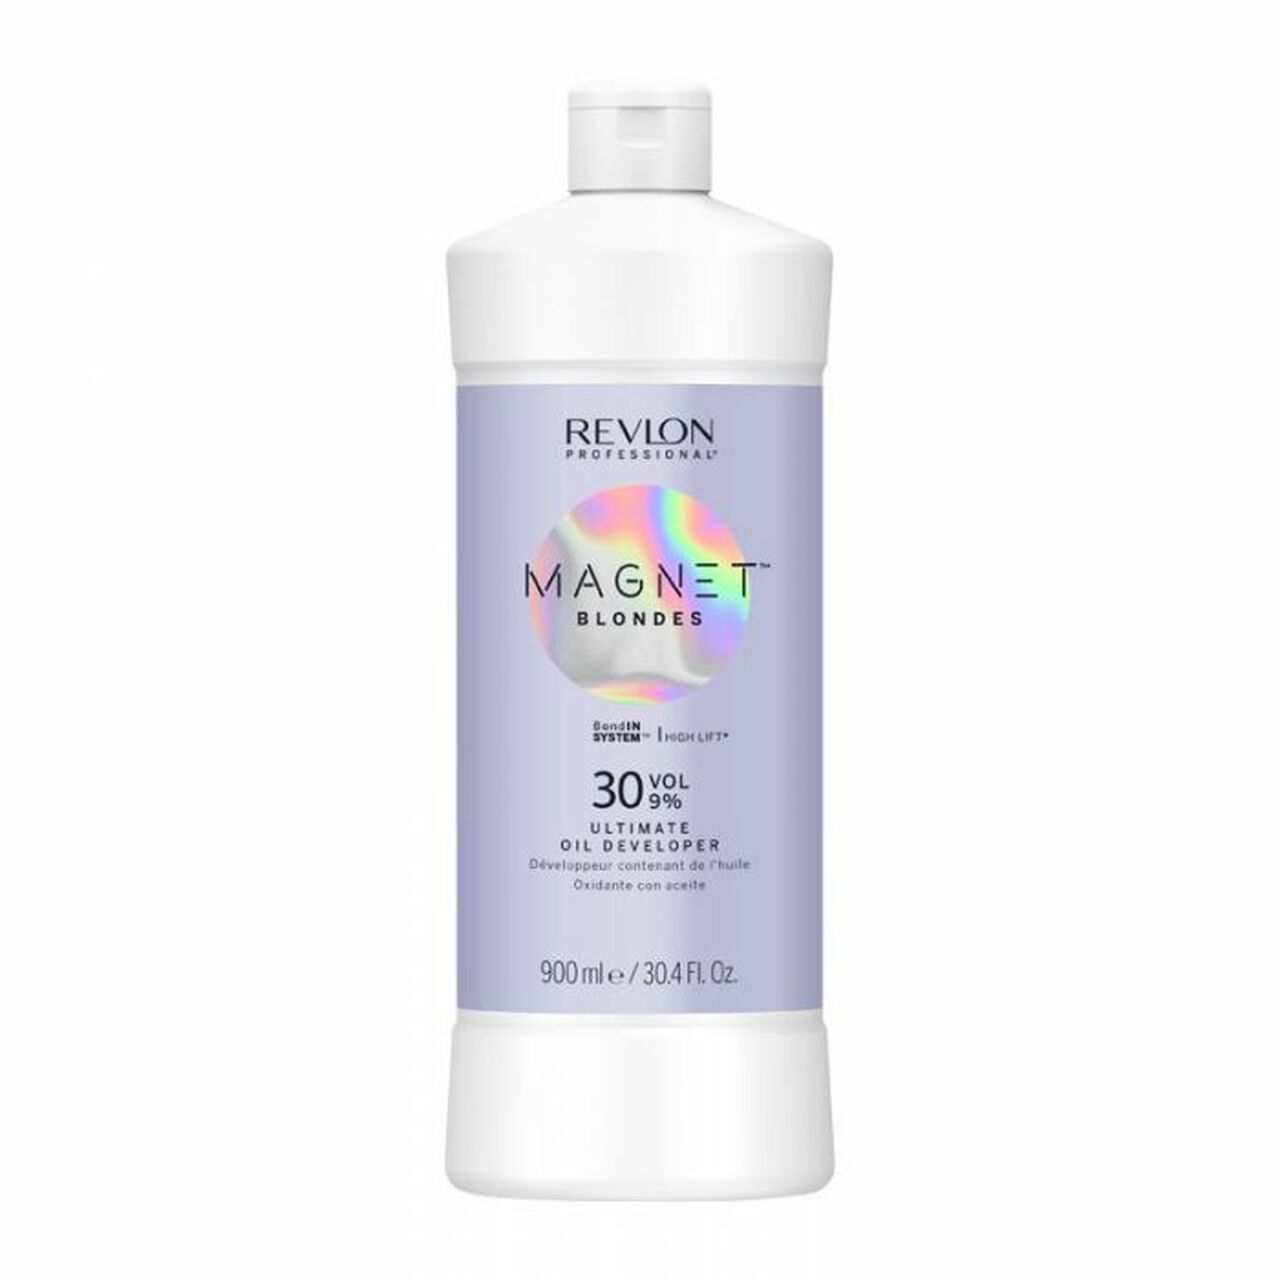 Revlon Magnet Blondes Oil Developer 30 Vol 9% 900ml - Salon Warehouse